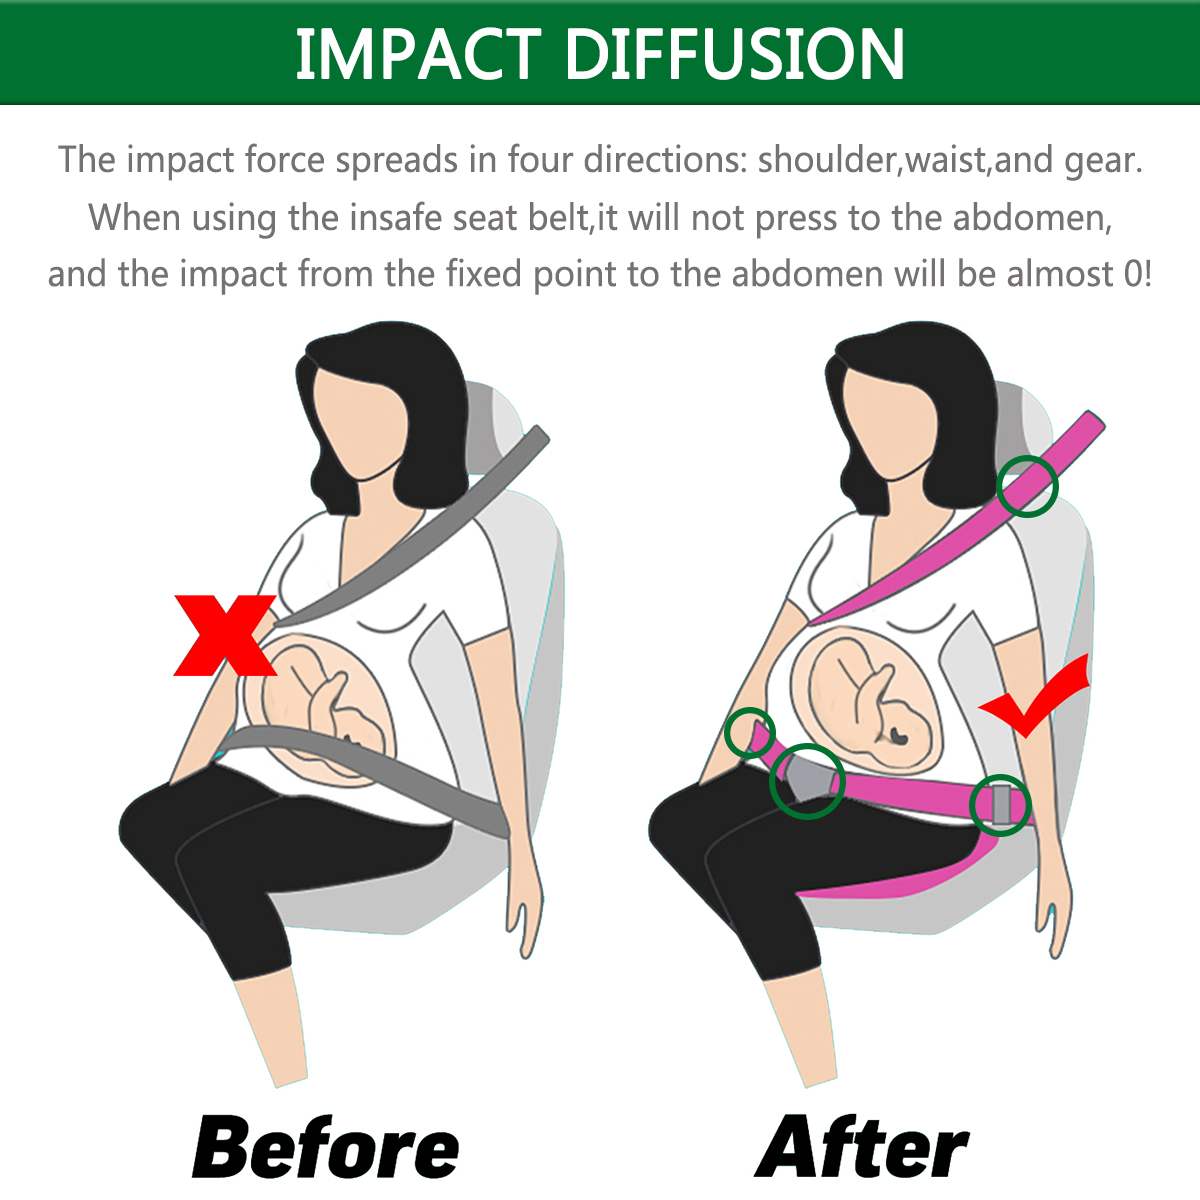 Car Pregnant Seat Belt Adjuster Comfort Safety Driving Belt